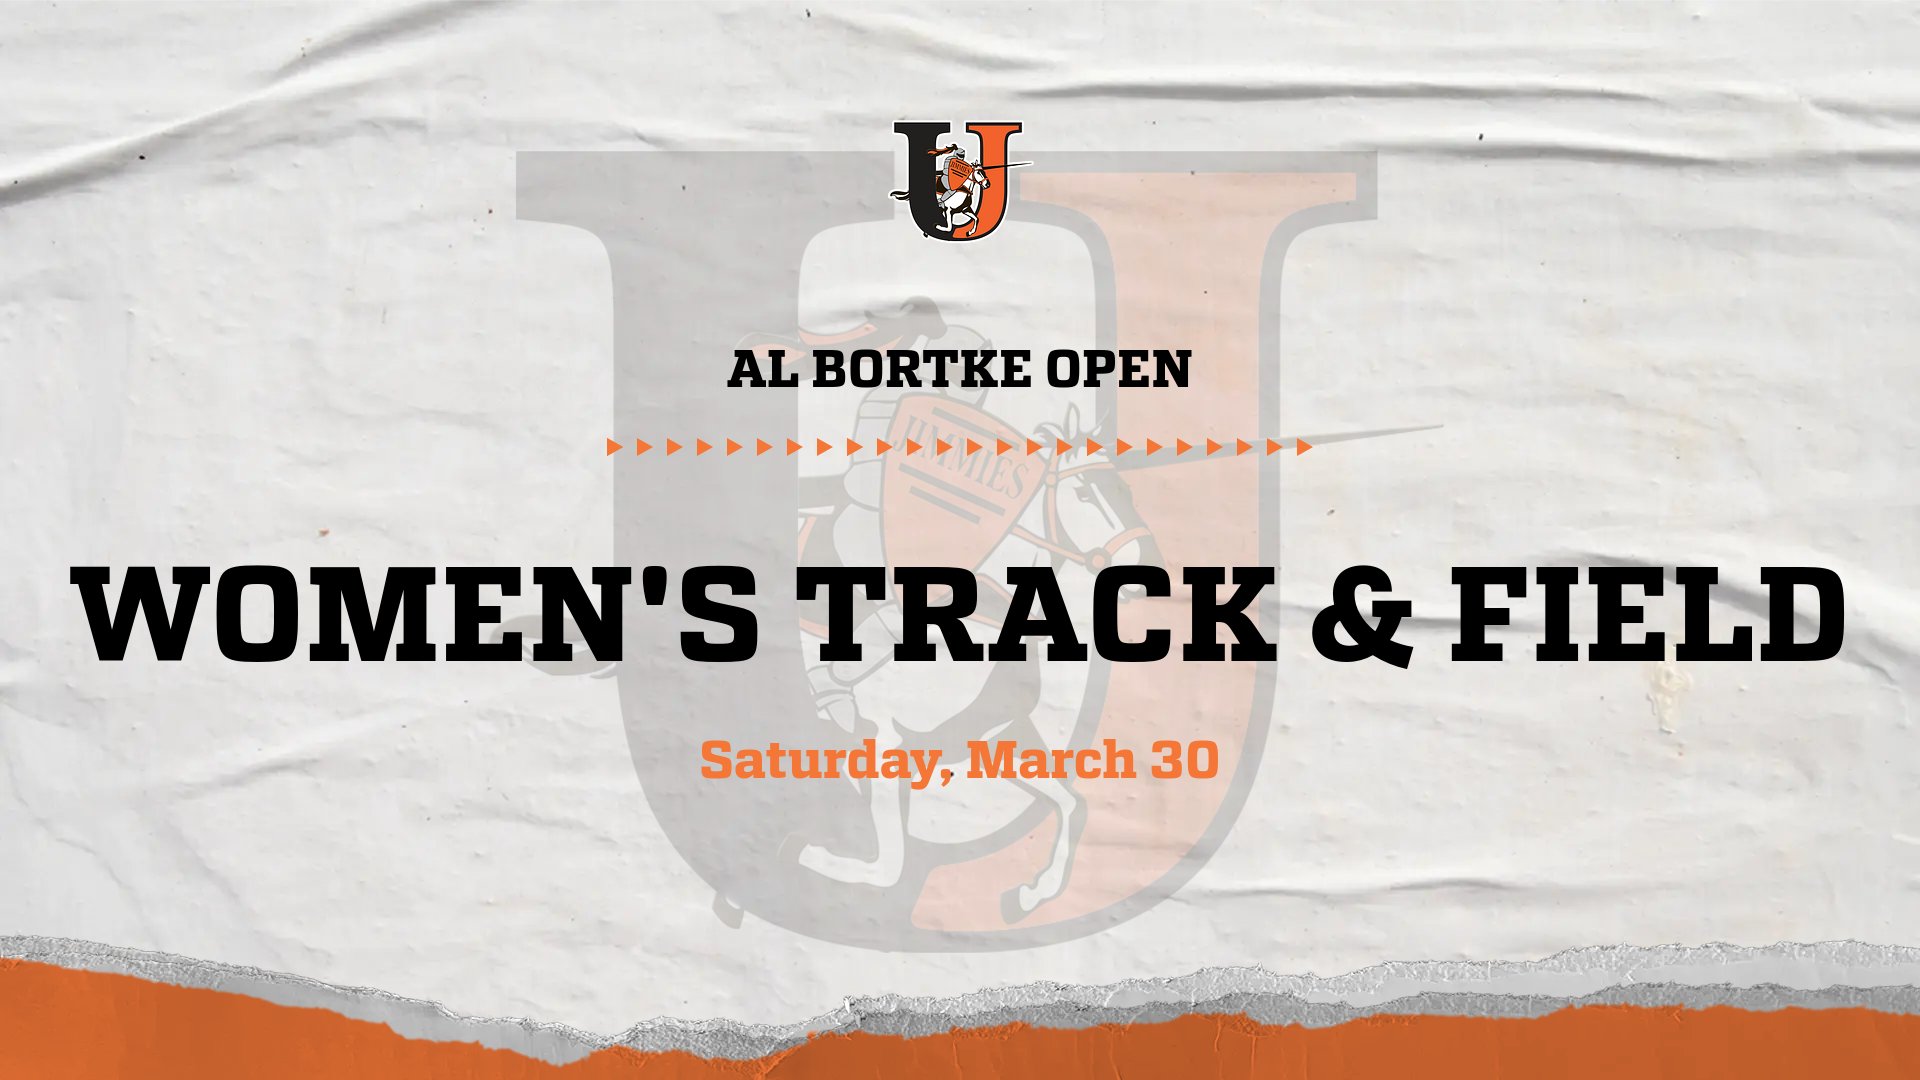 Women's track & field - Al Bortke Open